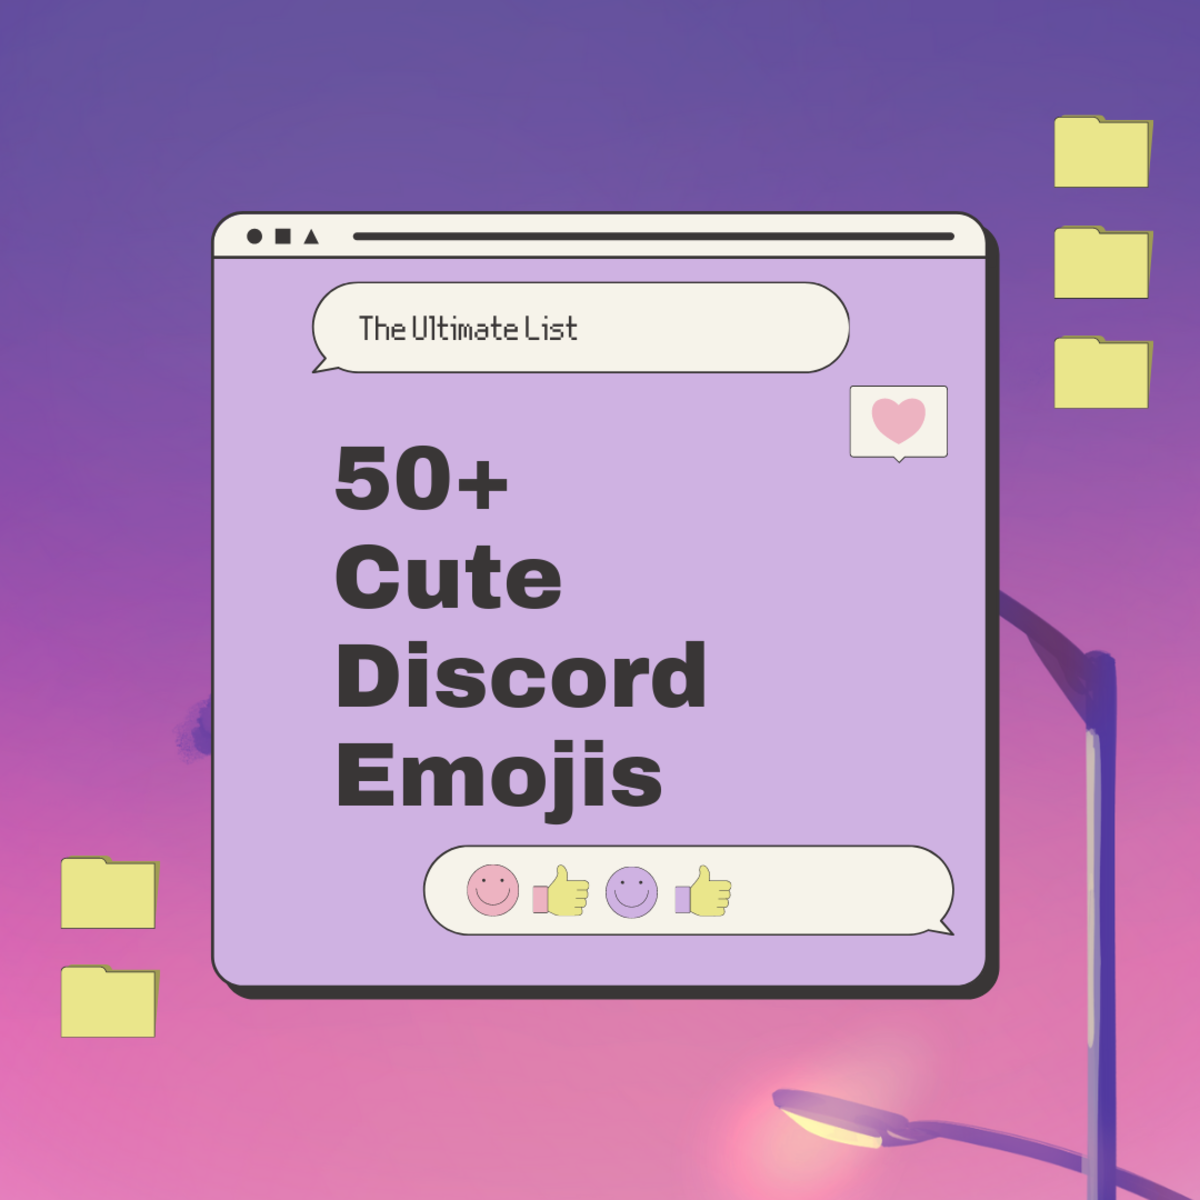 50+ Cute Discord Emoji: The Ultimate List